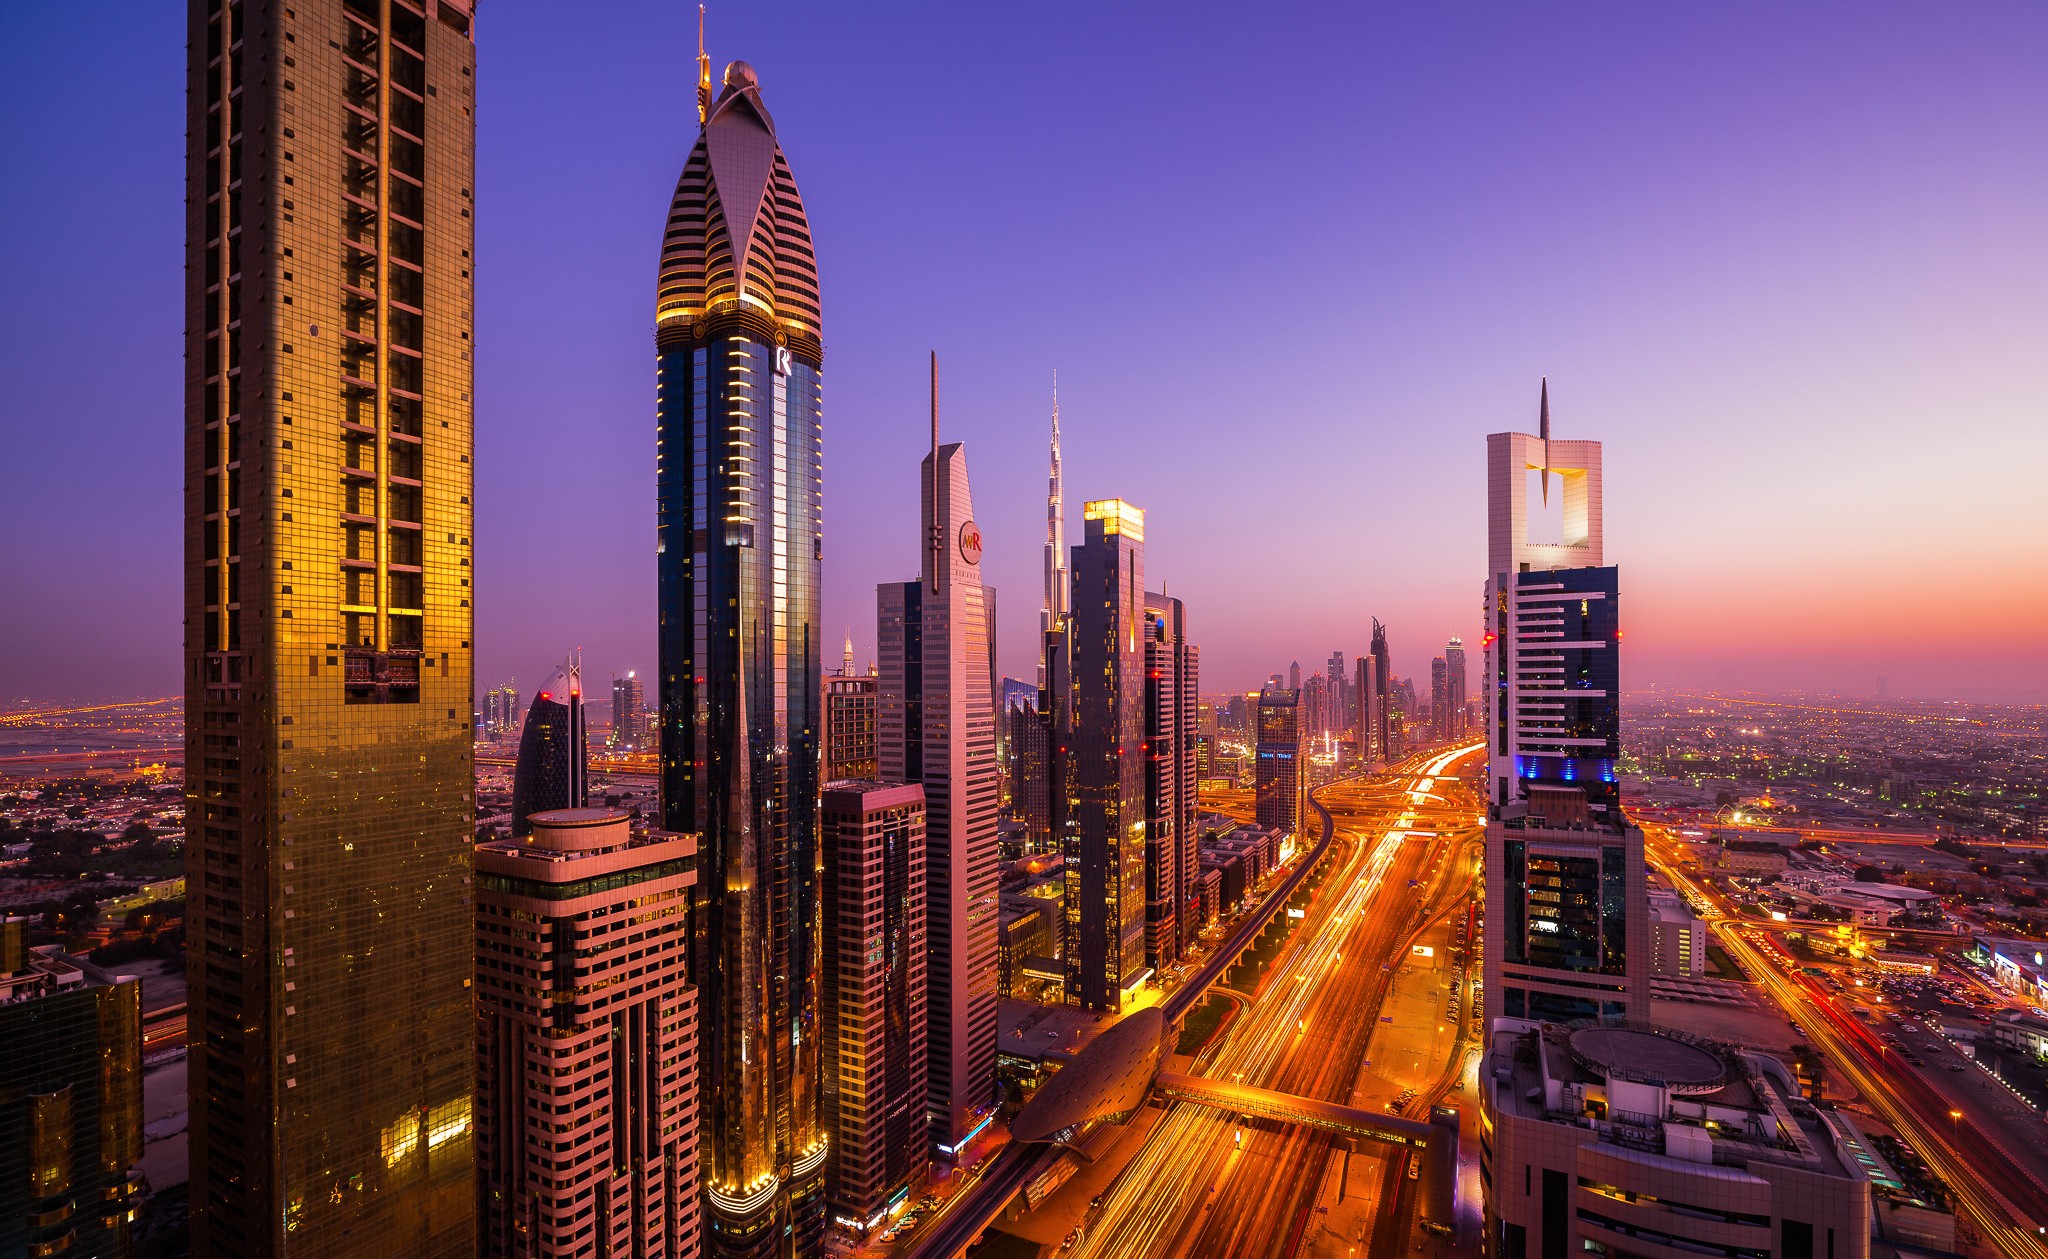 General 2048x1259 Dubai city building city lights sunset cityscape